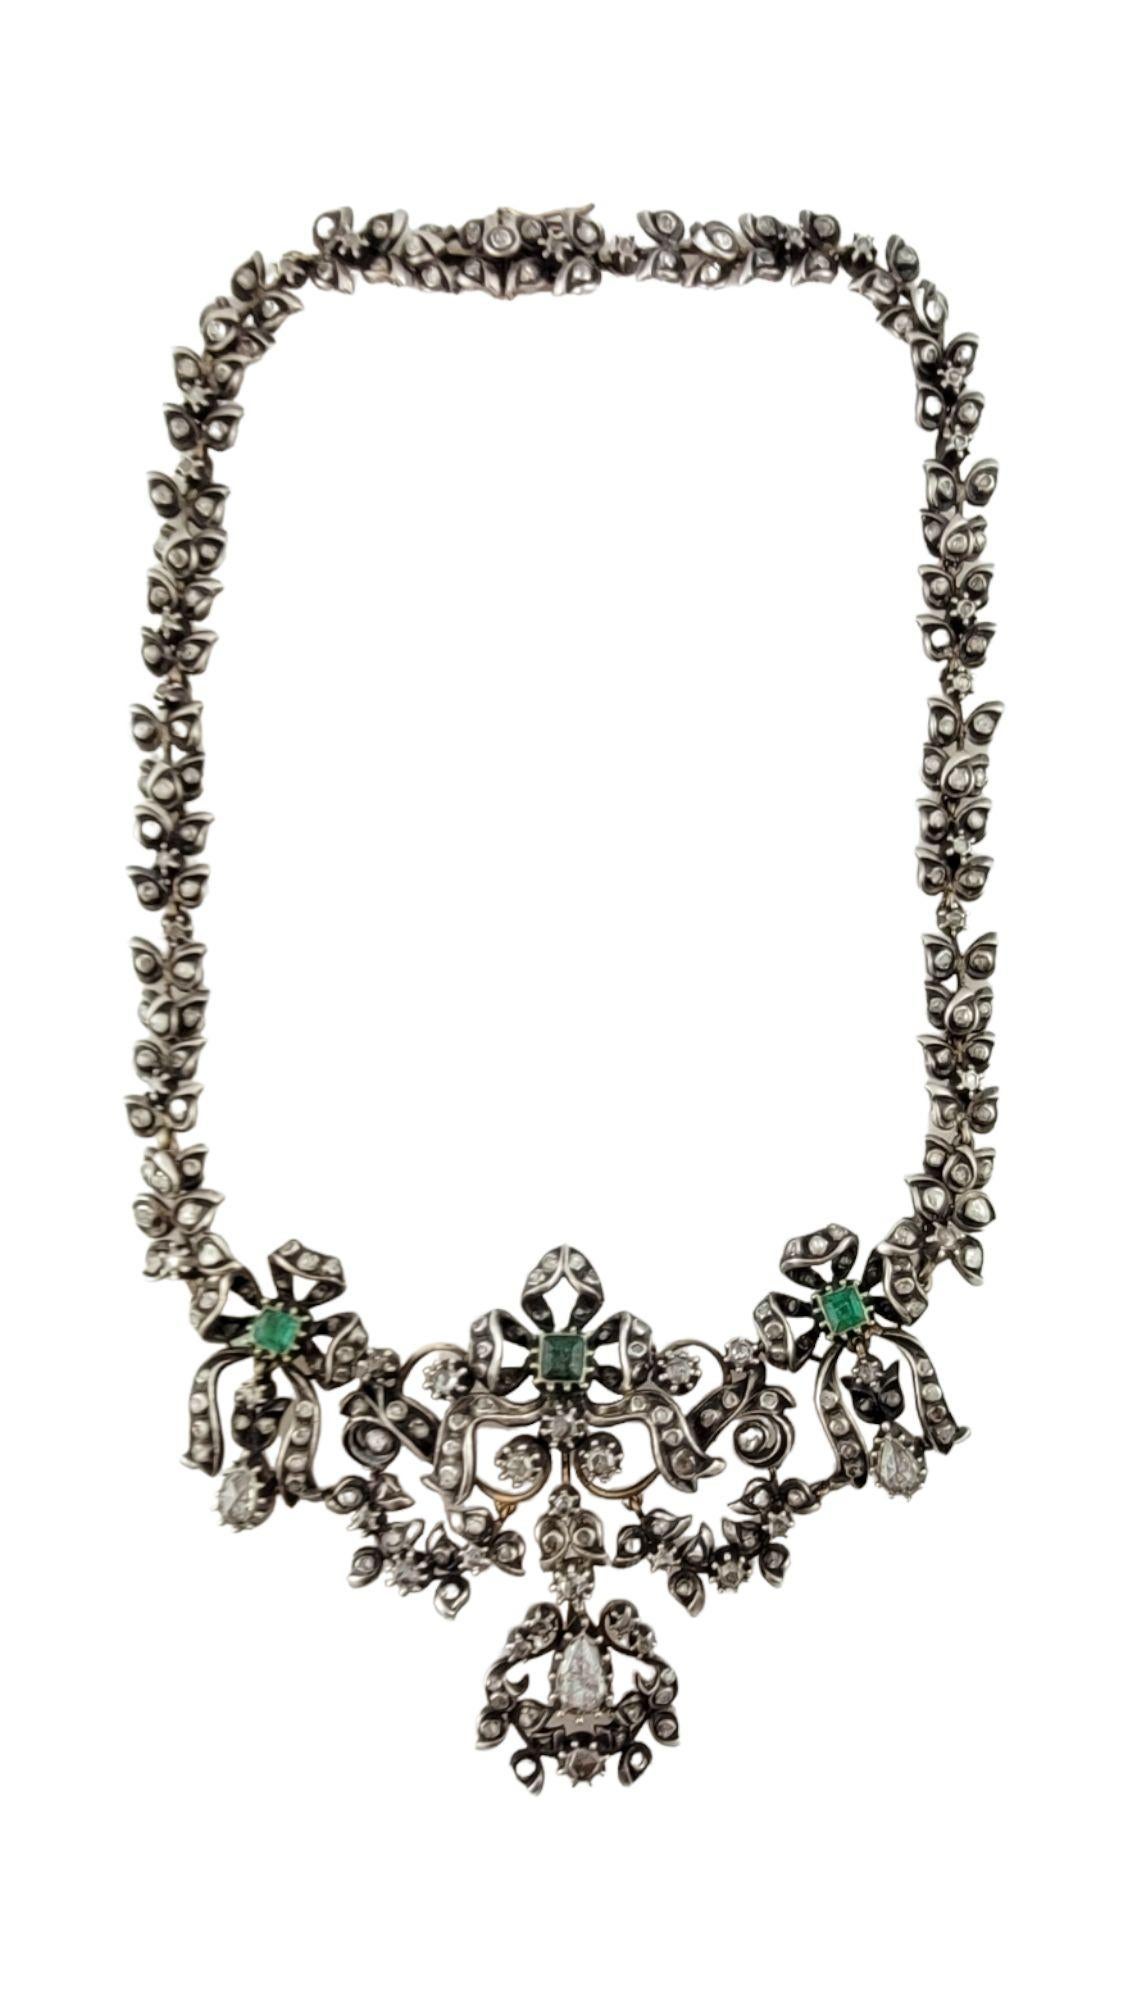 Collier ras du cou en argent et or géorgien avec diamants et émeraudes

Ce superbe collier date de l'époque géorgienne du XVIIIe siècle. Ce collier aurait été porté en soirée par une riche dame géorgienne.

Le collier est serti d'argent et d'or